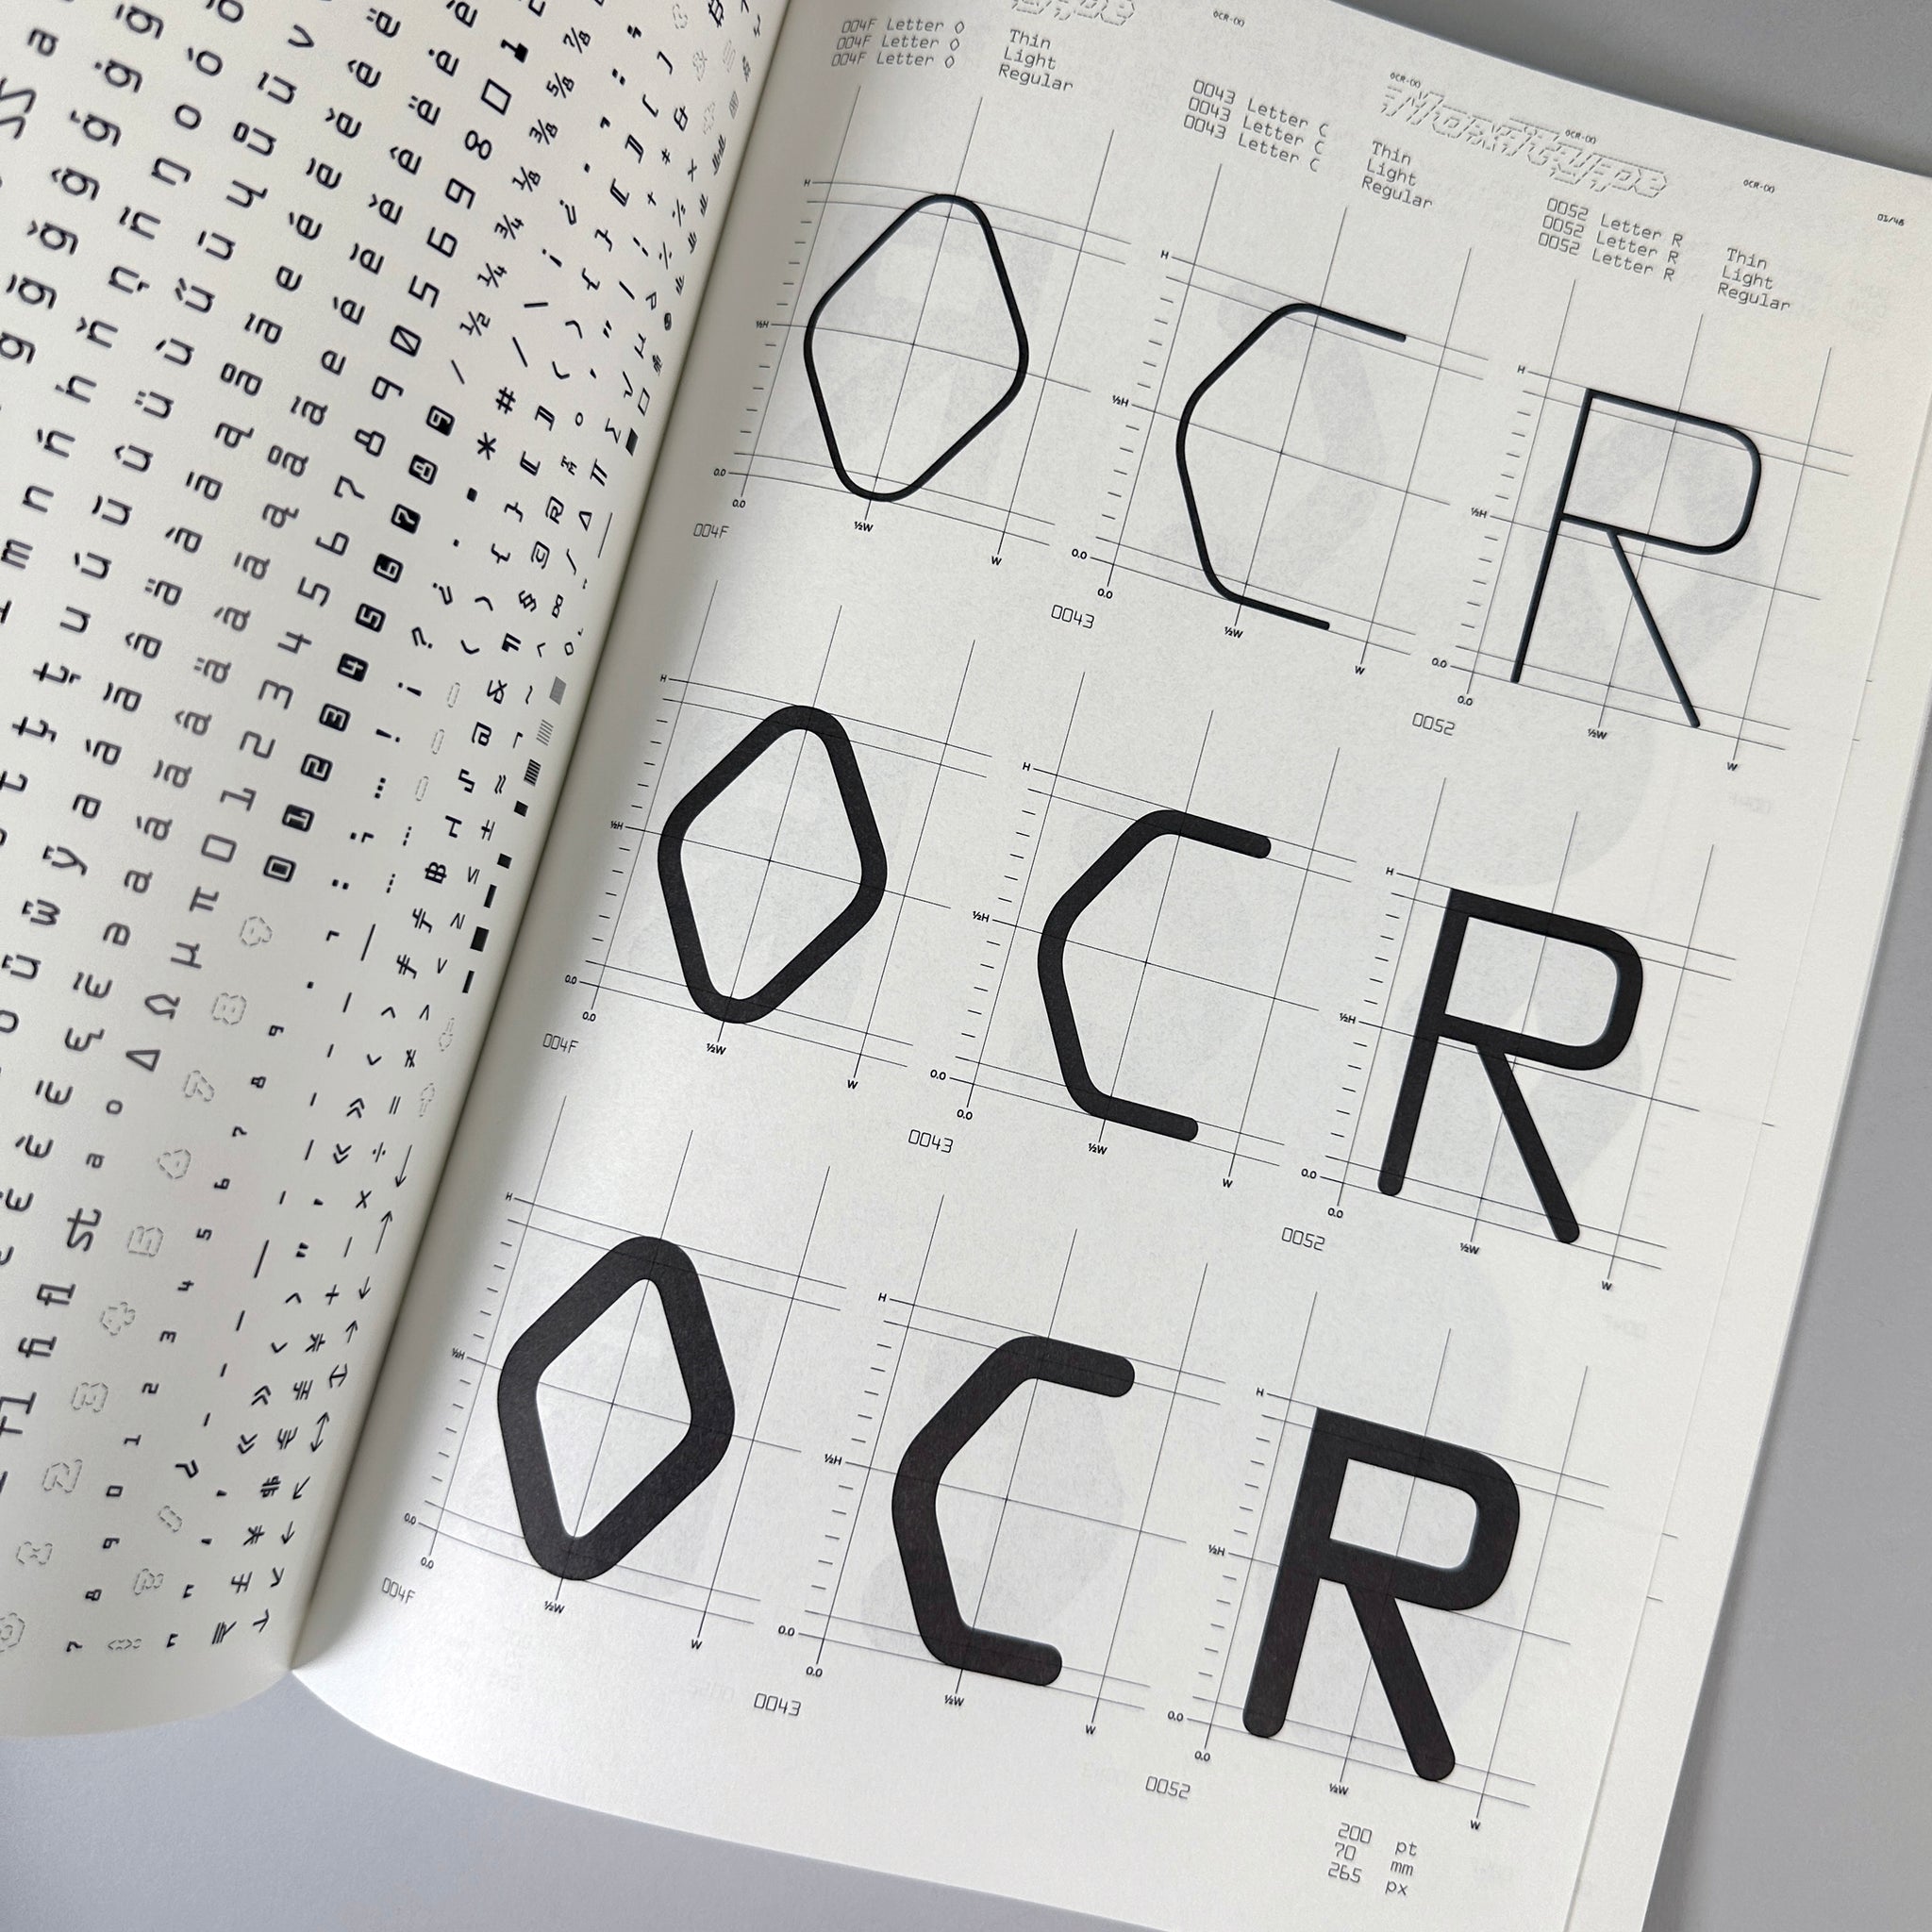 OCR-X Type Specimen / Maxitype